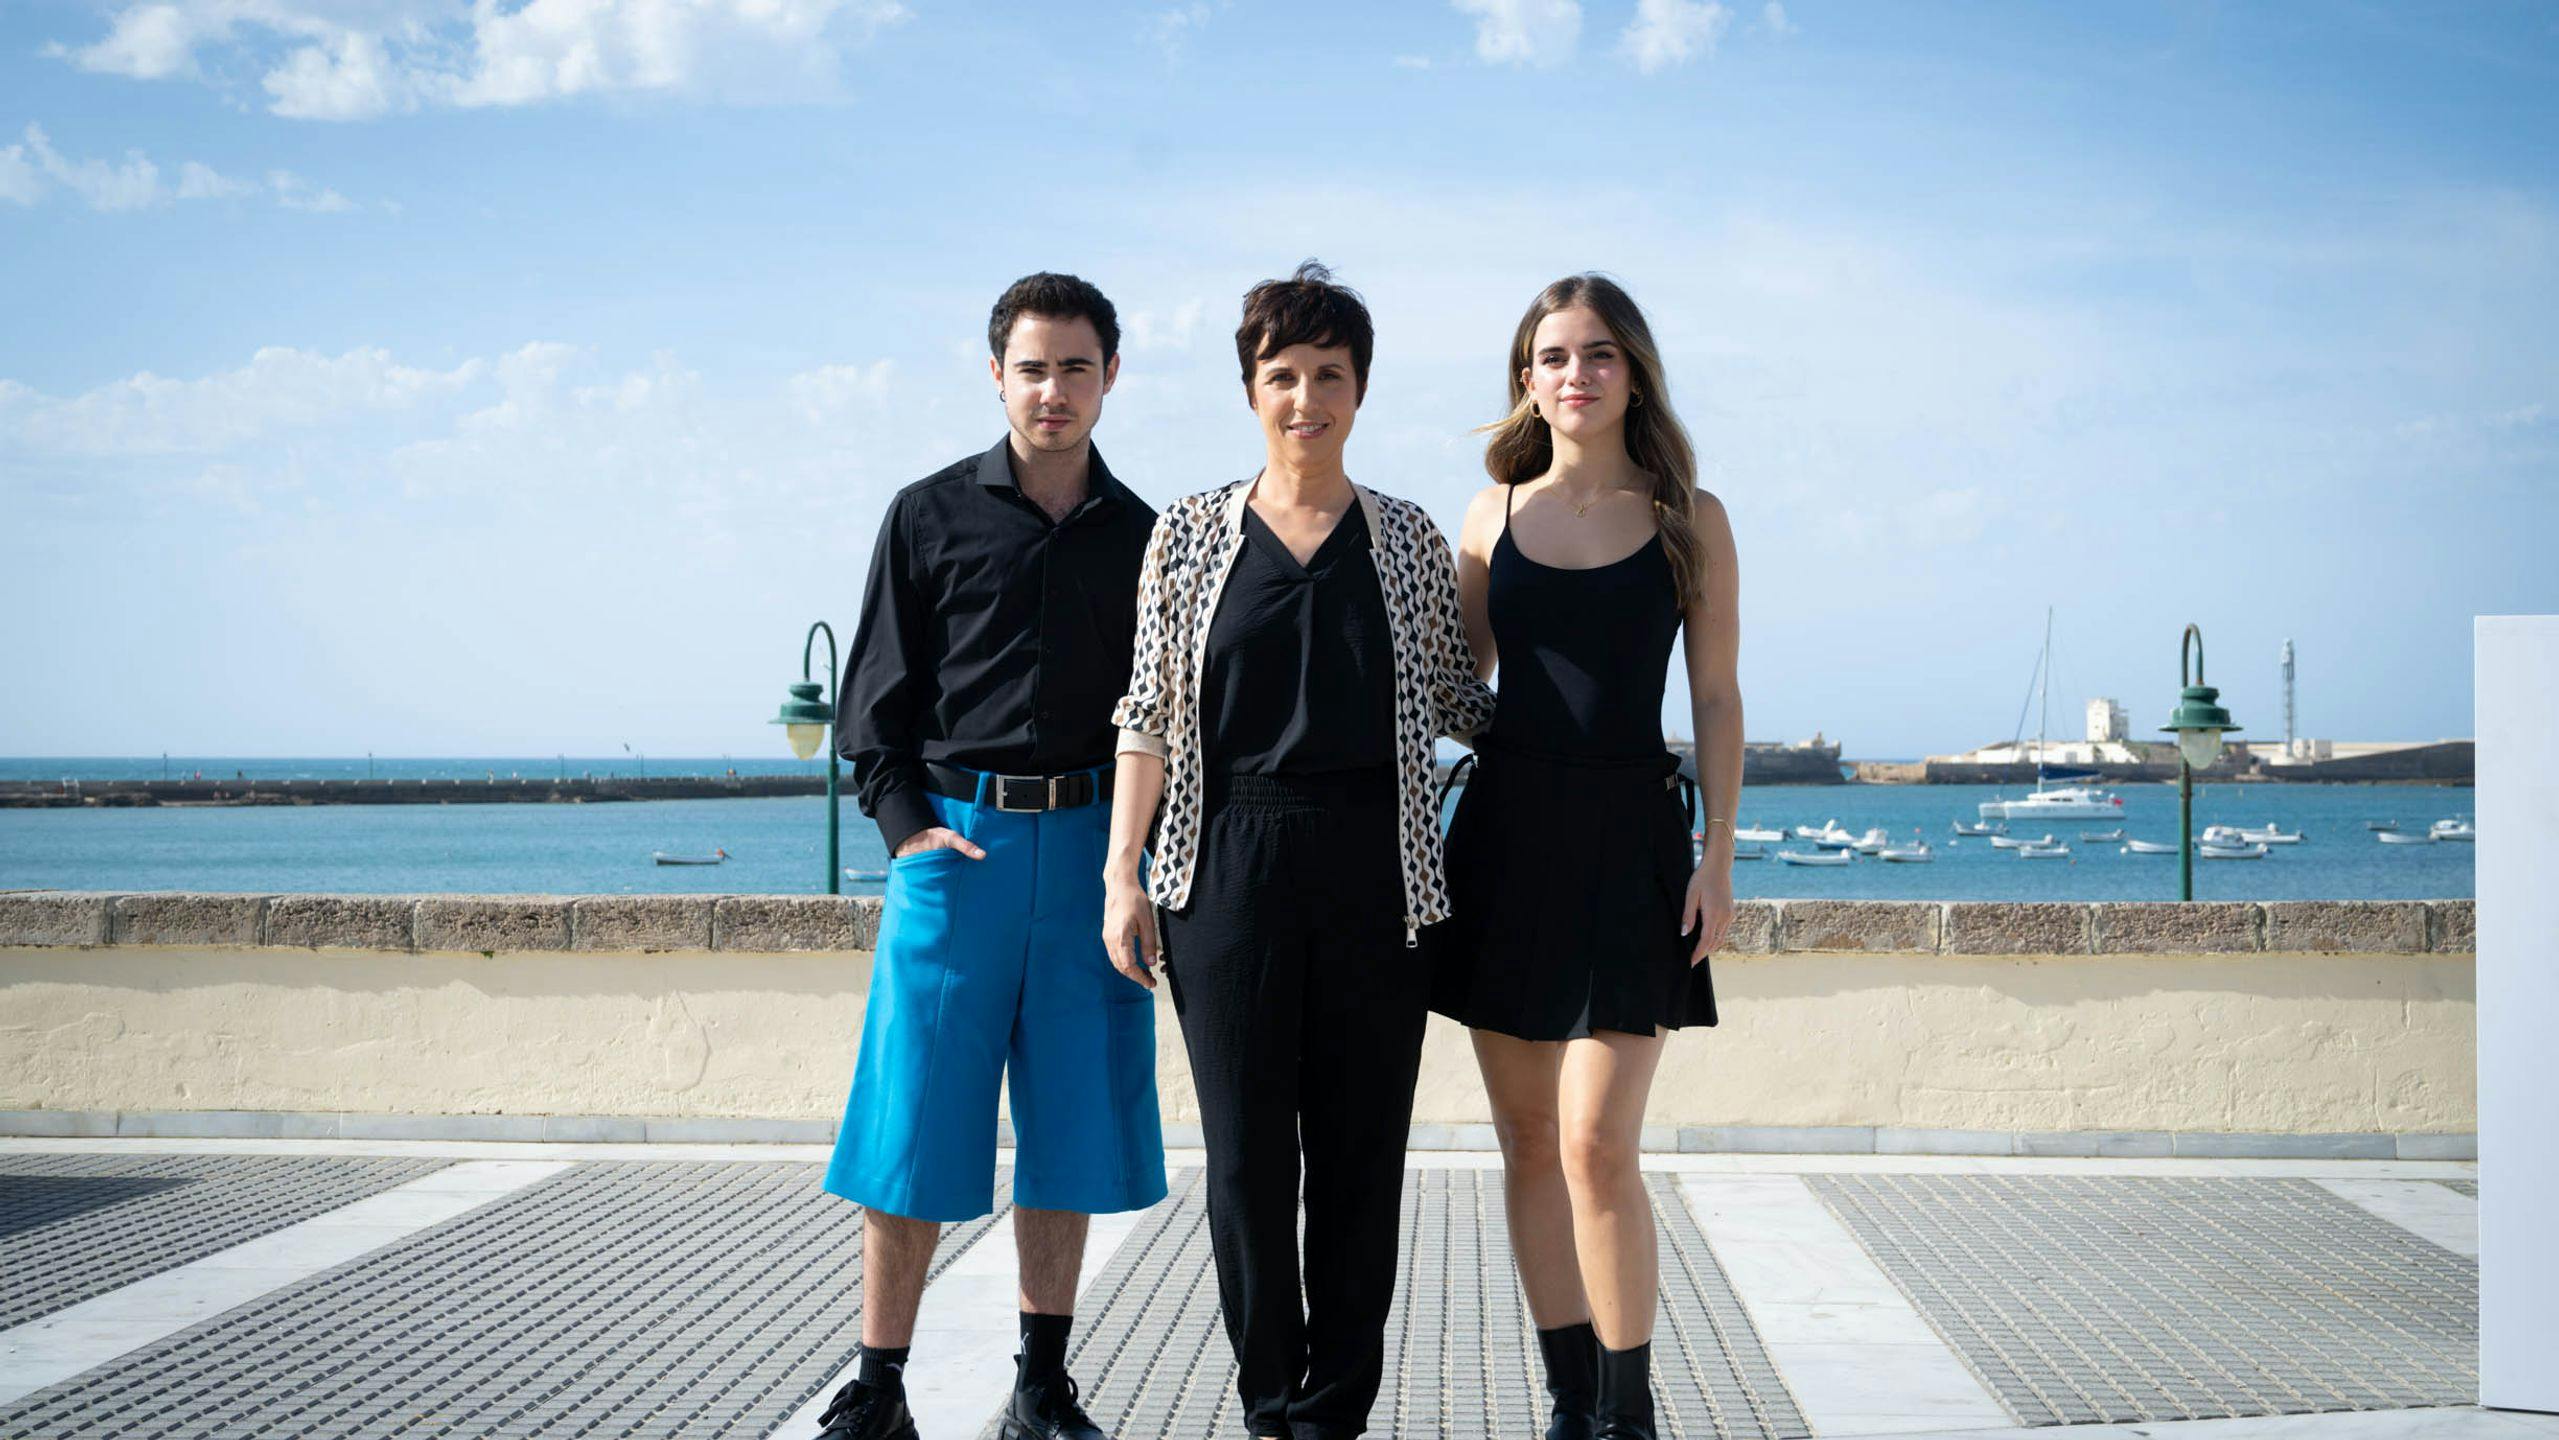  Ander Puig, Coral Cruz y Júlia Gibert (de izq. a der.) de 'Ser o no ser' posan en el South International Series Festival